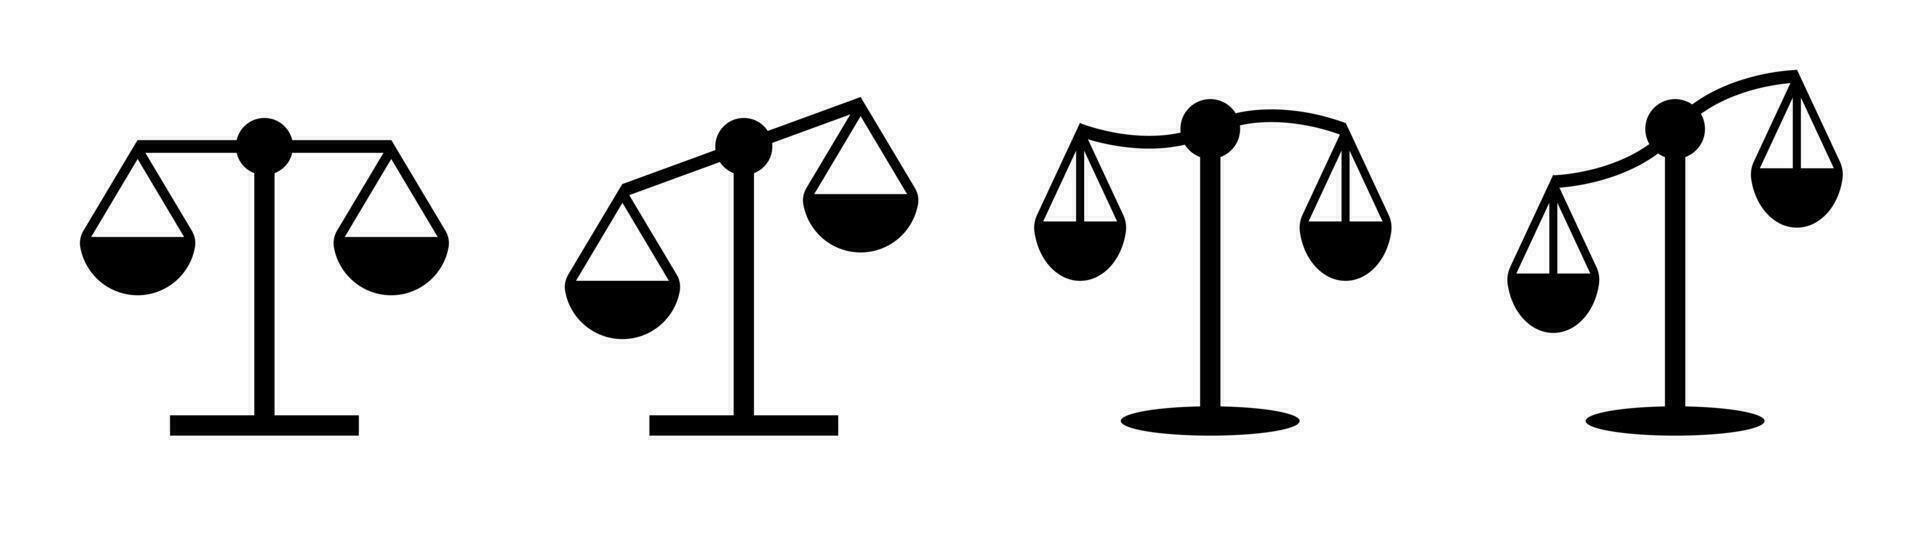 confrontare scala impostare. equilibrio simbolo. uguaglianza icone. peso equilibrio nel nero. Tribunale simbolo vettore